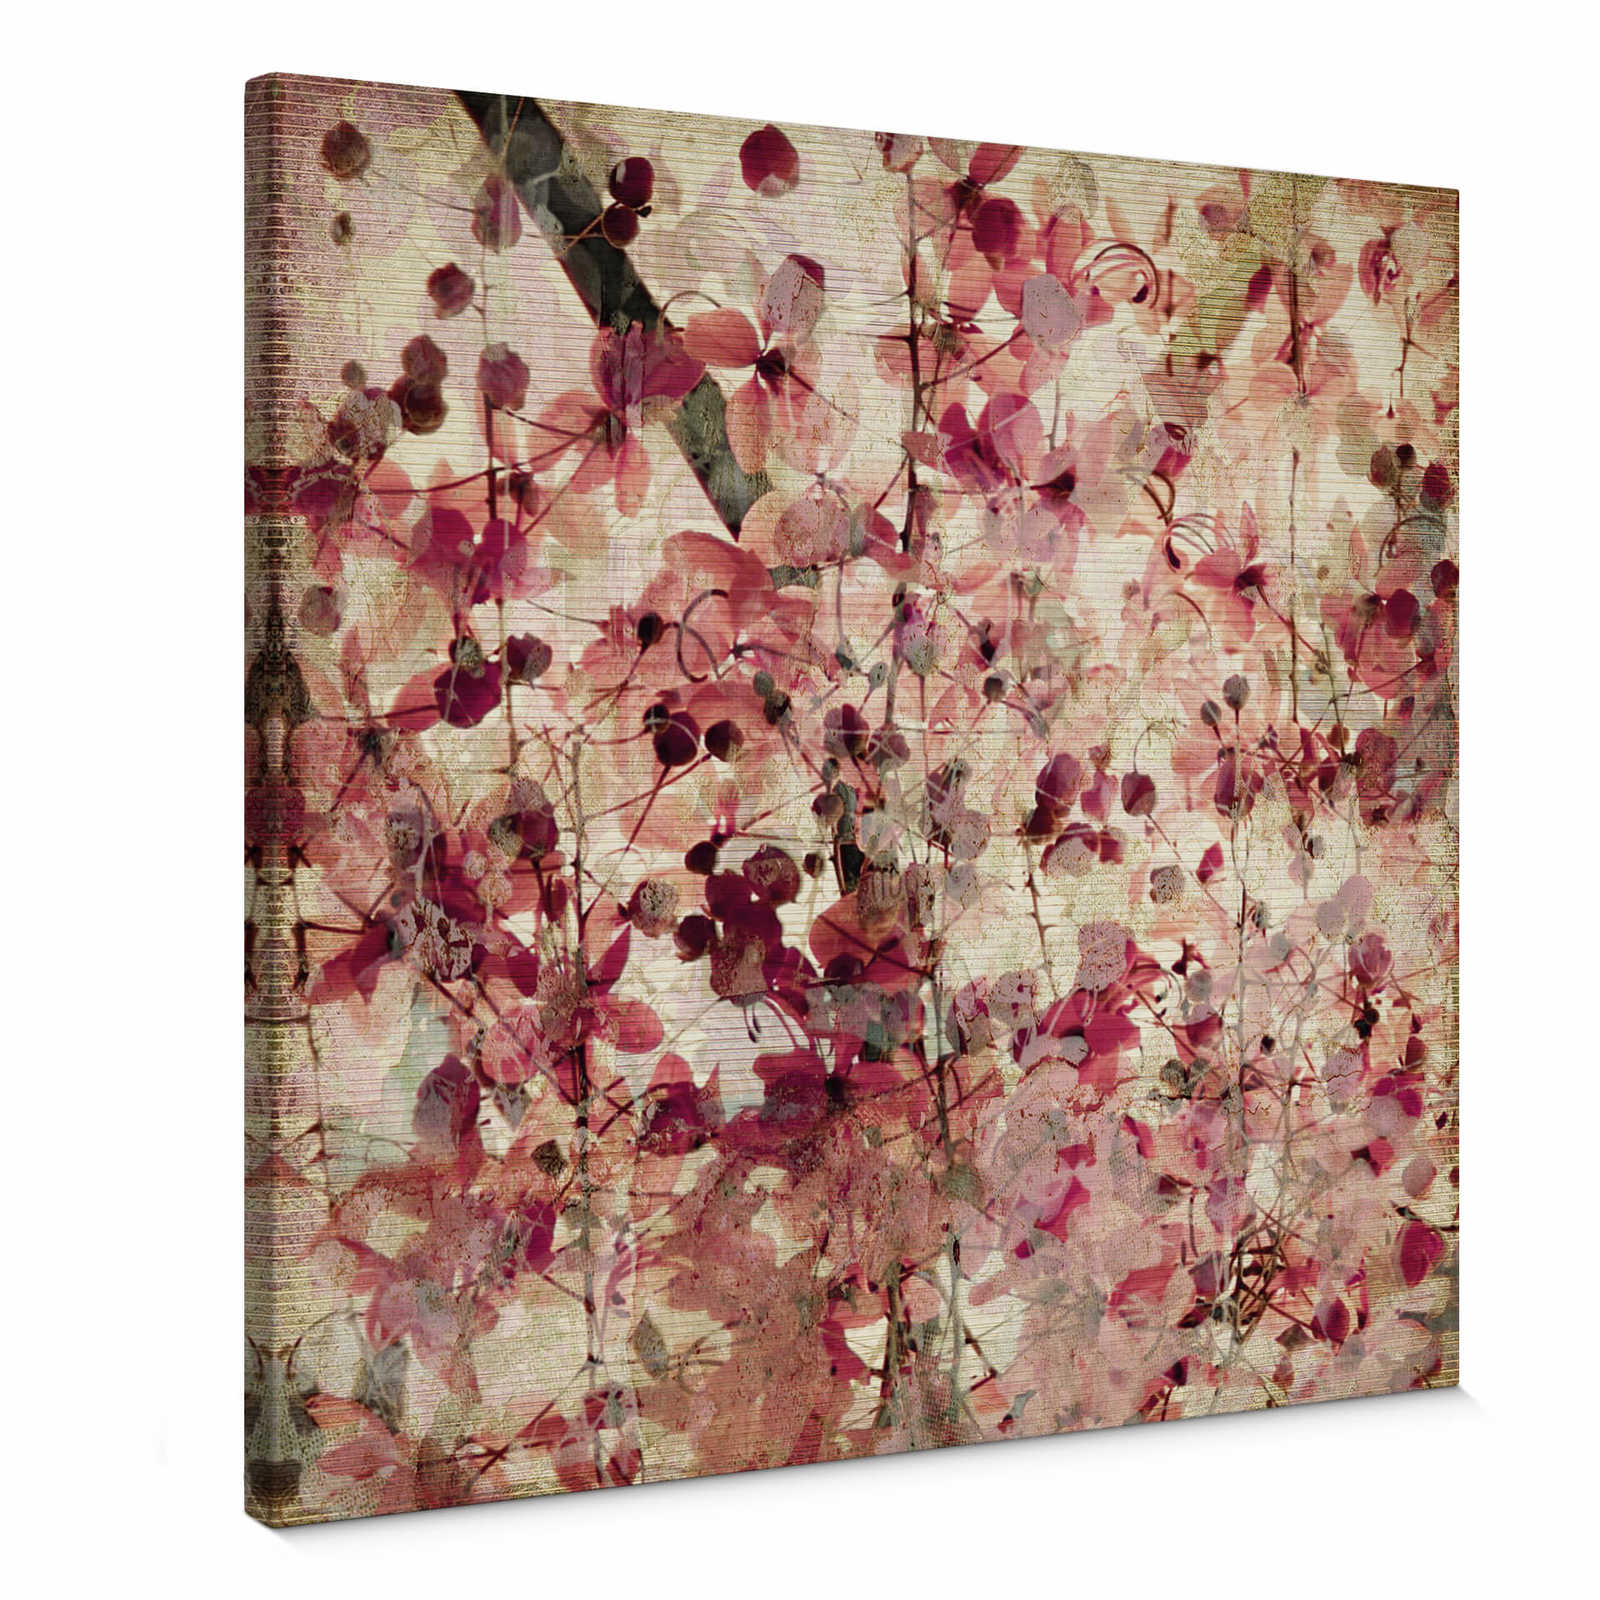 Toile carrée vintage avec motif floral - 0,50 m x 0,50 m
